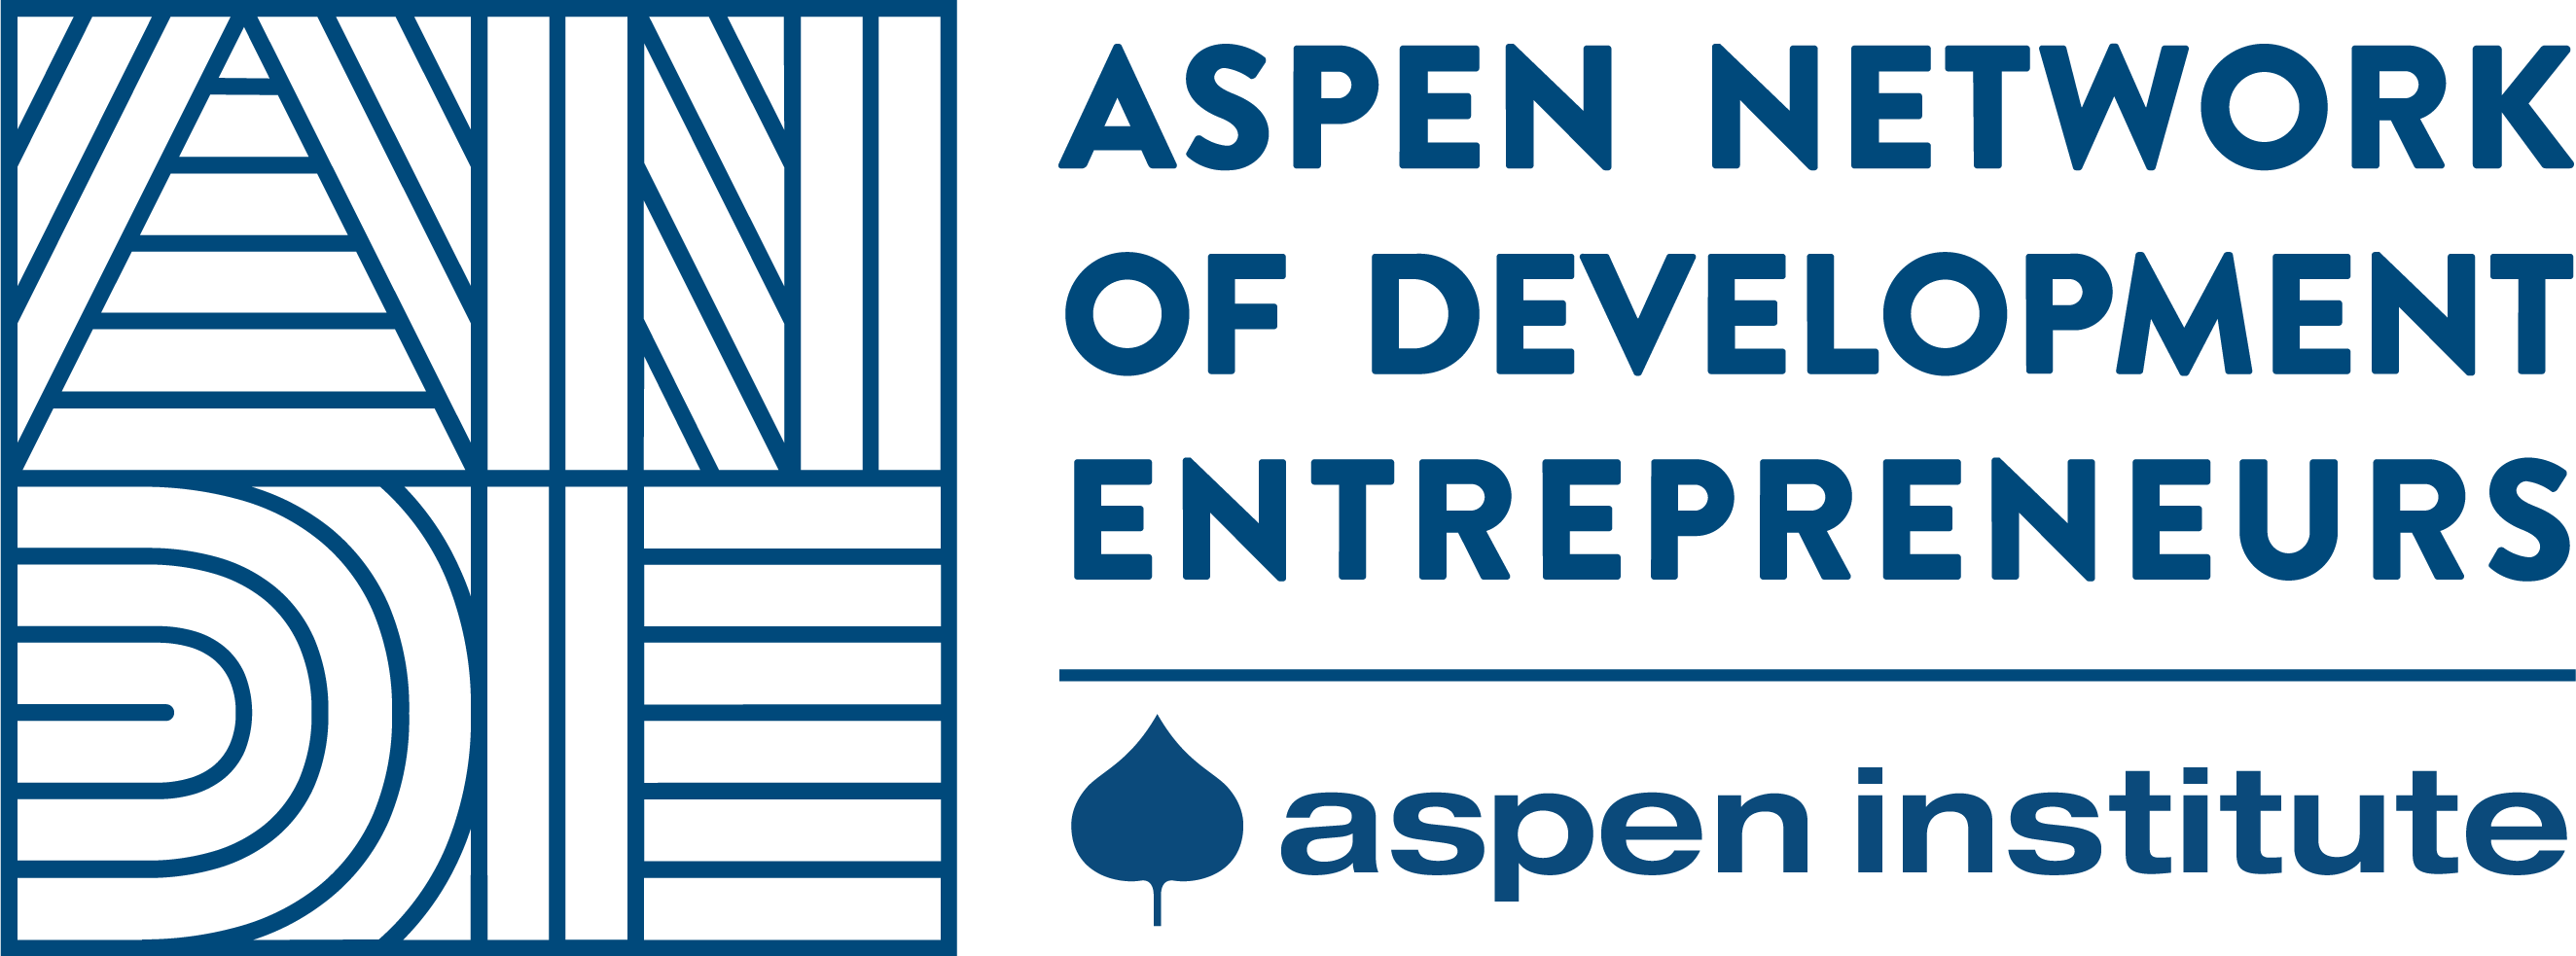 Aspen Network Of Development Entrepreneurs